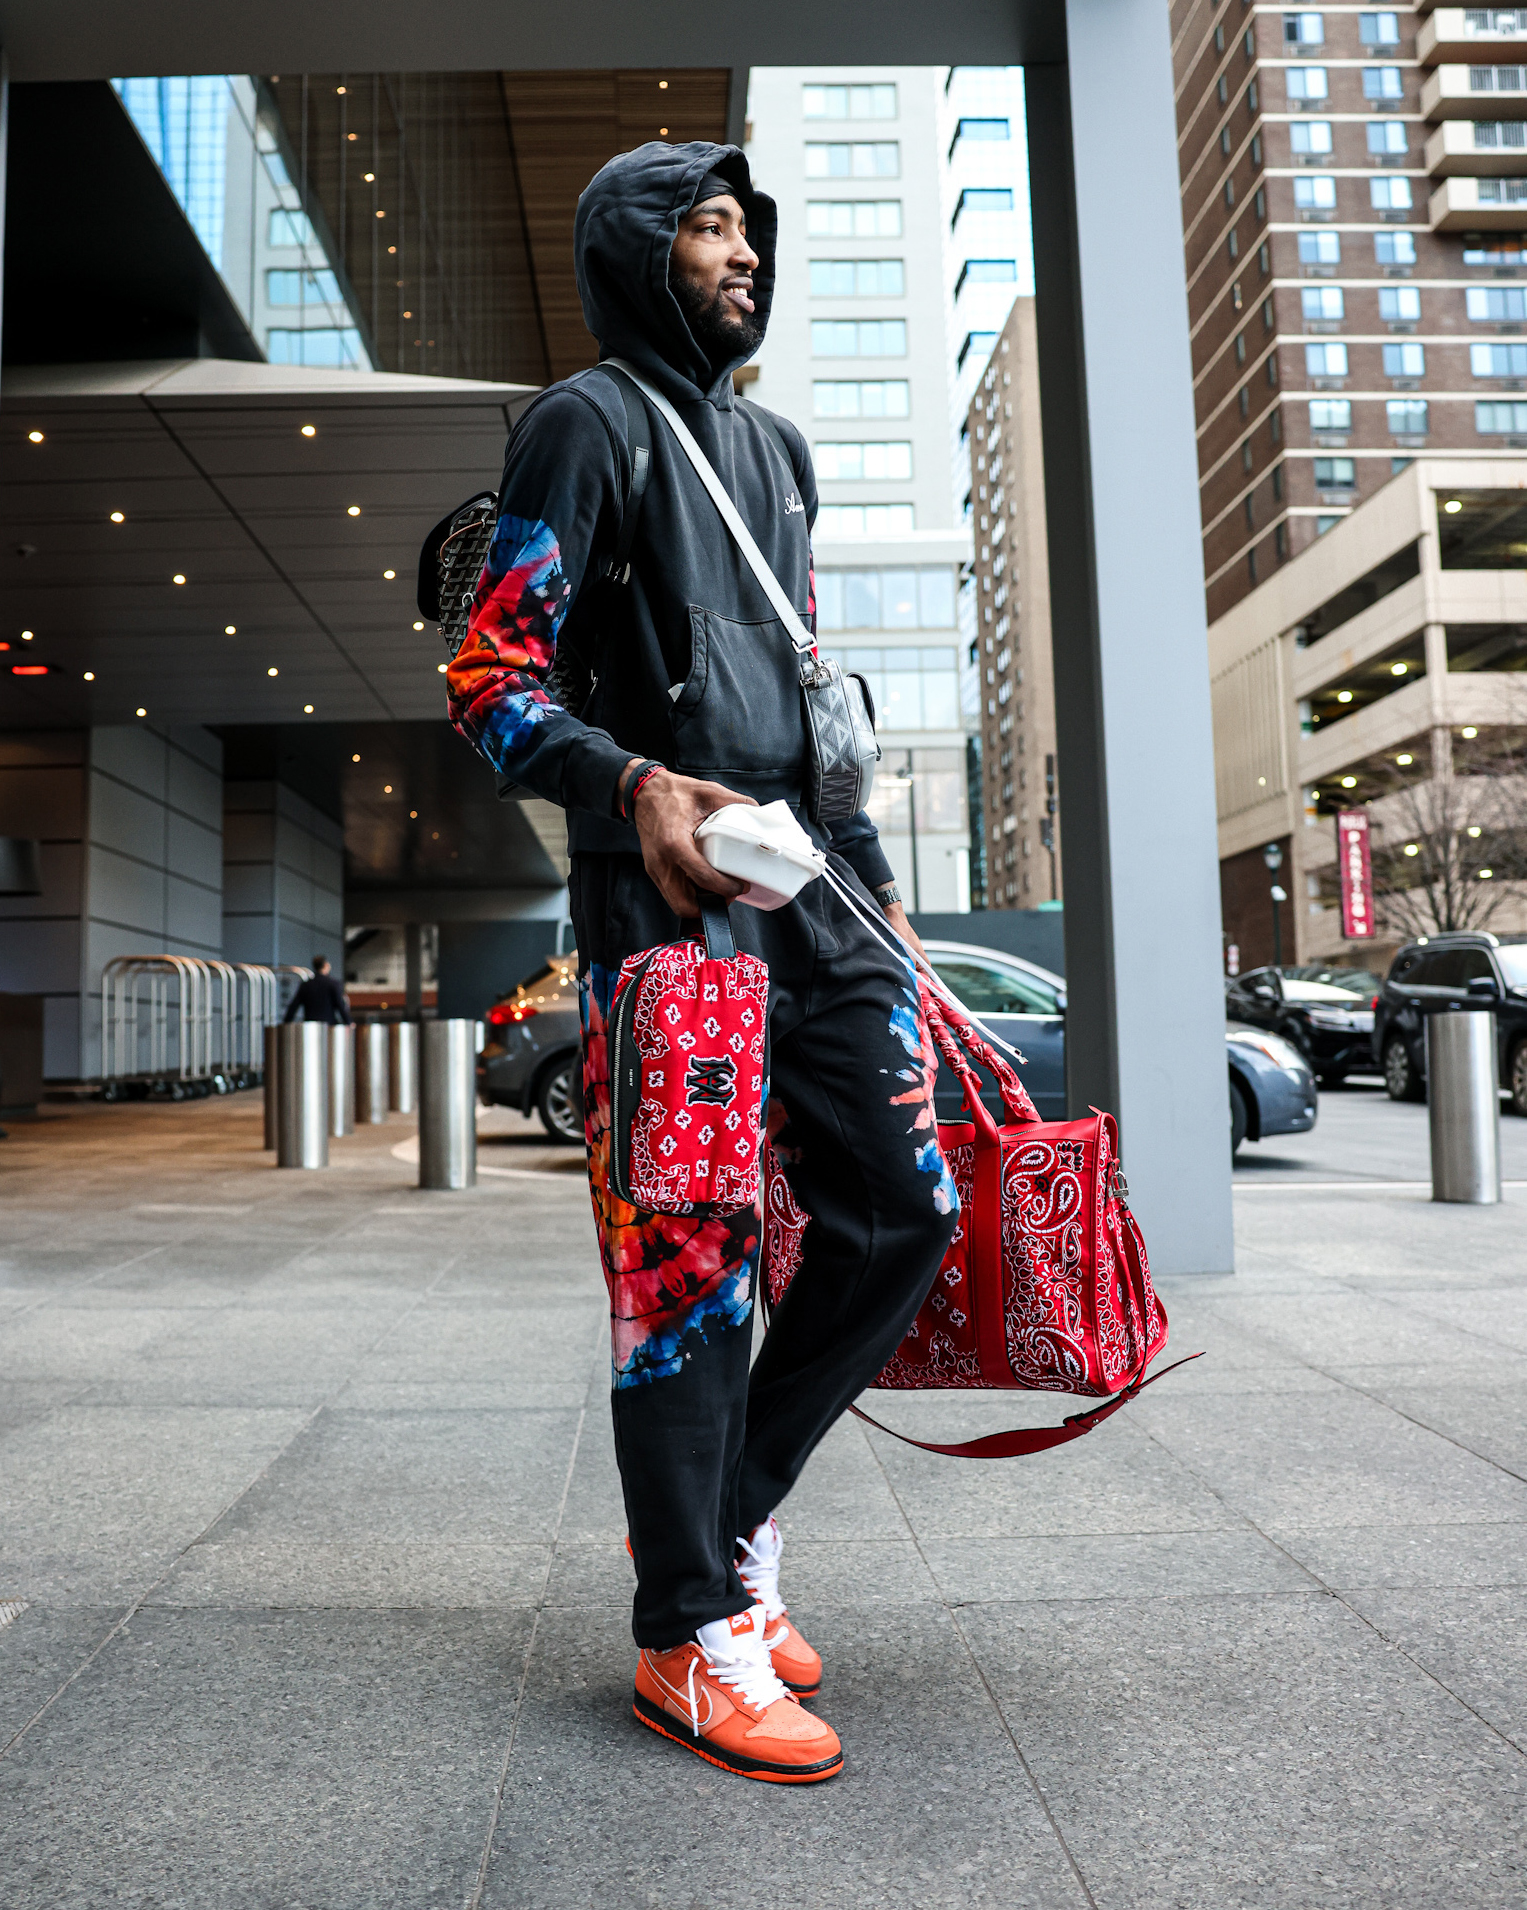 Chicago Bulls on Twitter: "Derrick Jones in the Orange Lobster dunks. @TheRea1DJones | #BullsKicks https://t.co/Iq3cTBGK7I" / Twitter